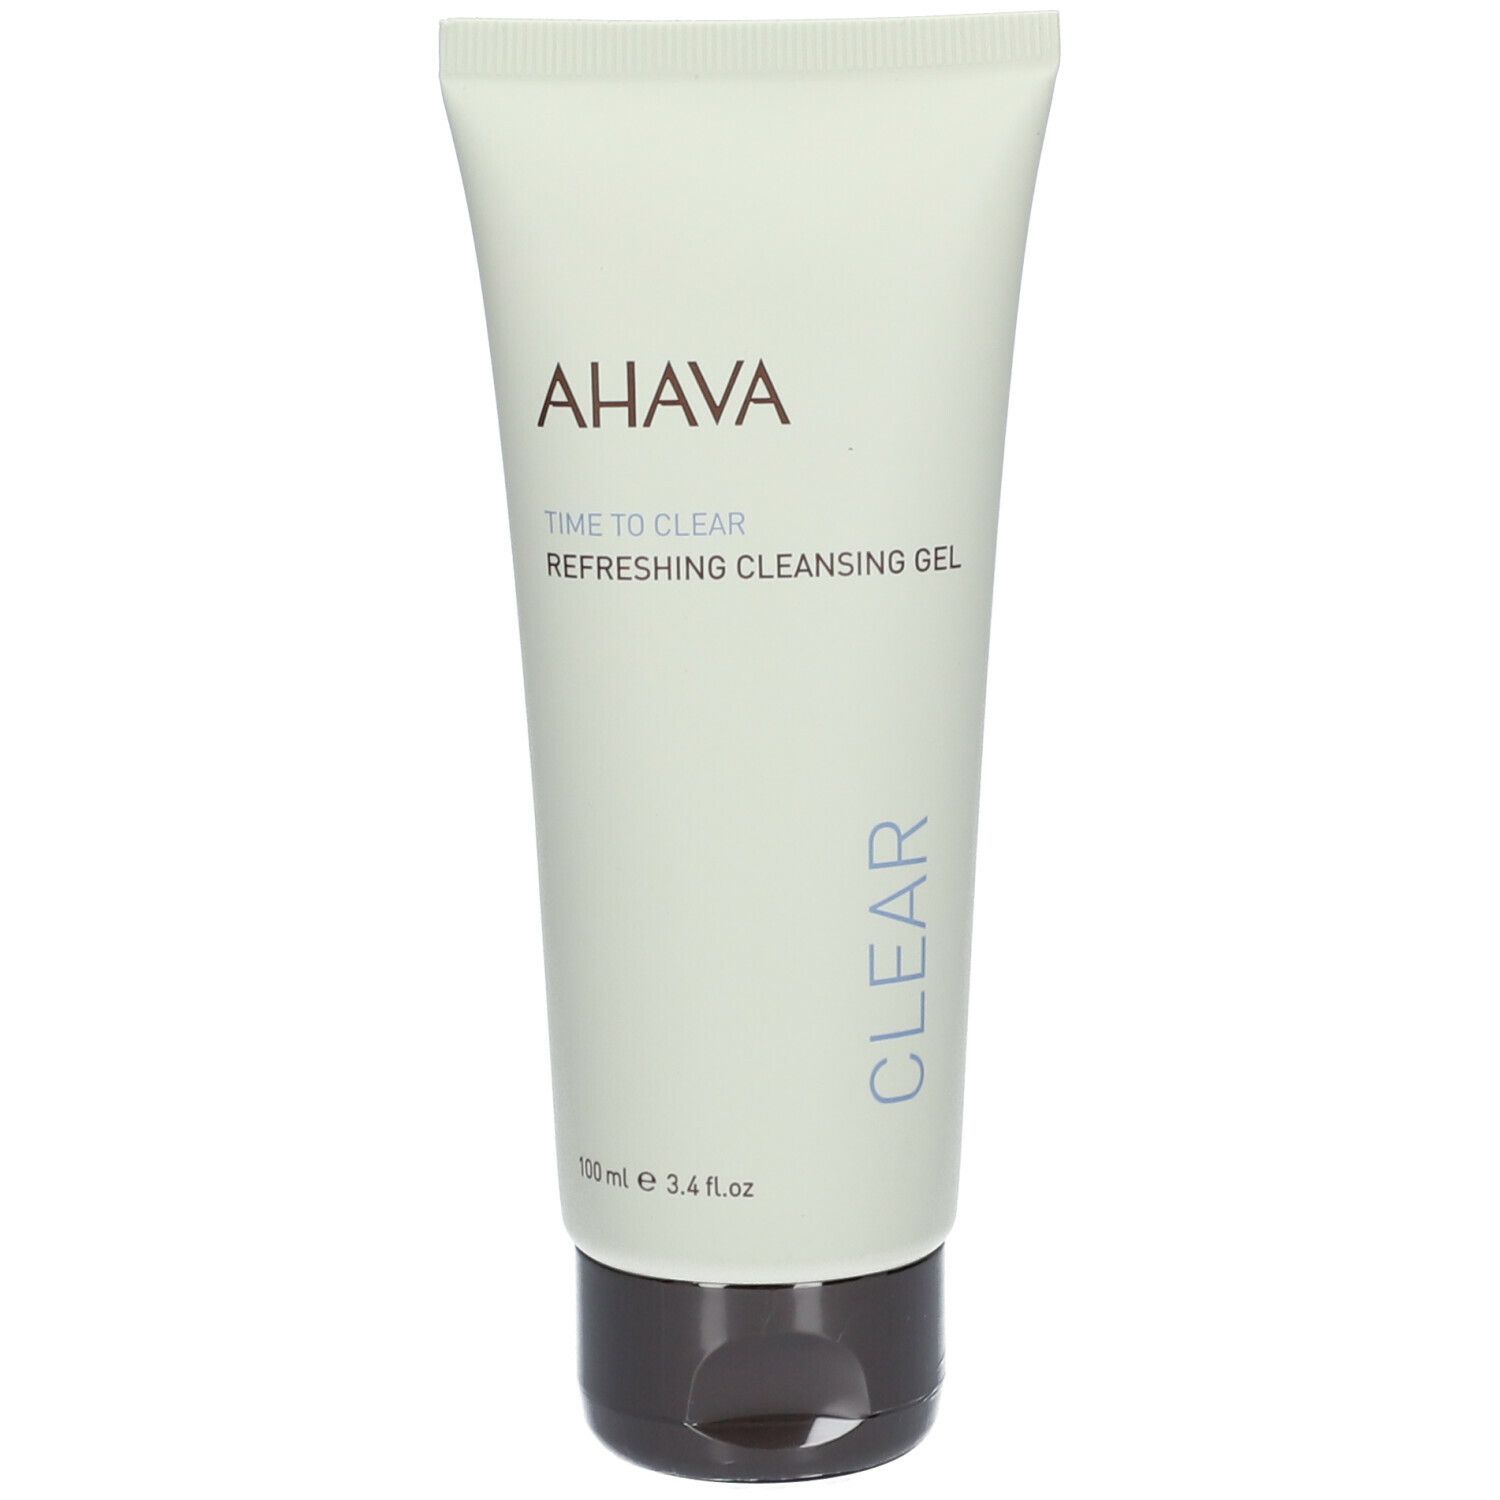 AHAVA Refreshing Cleansing Gel